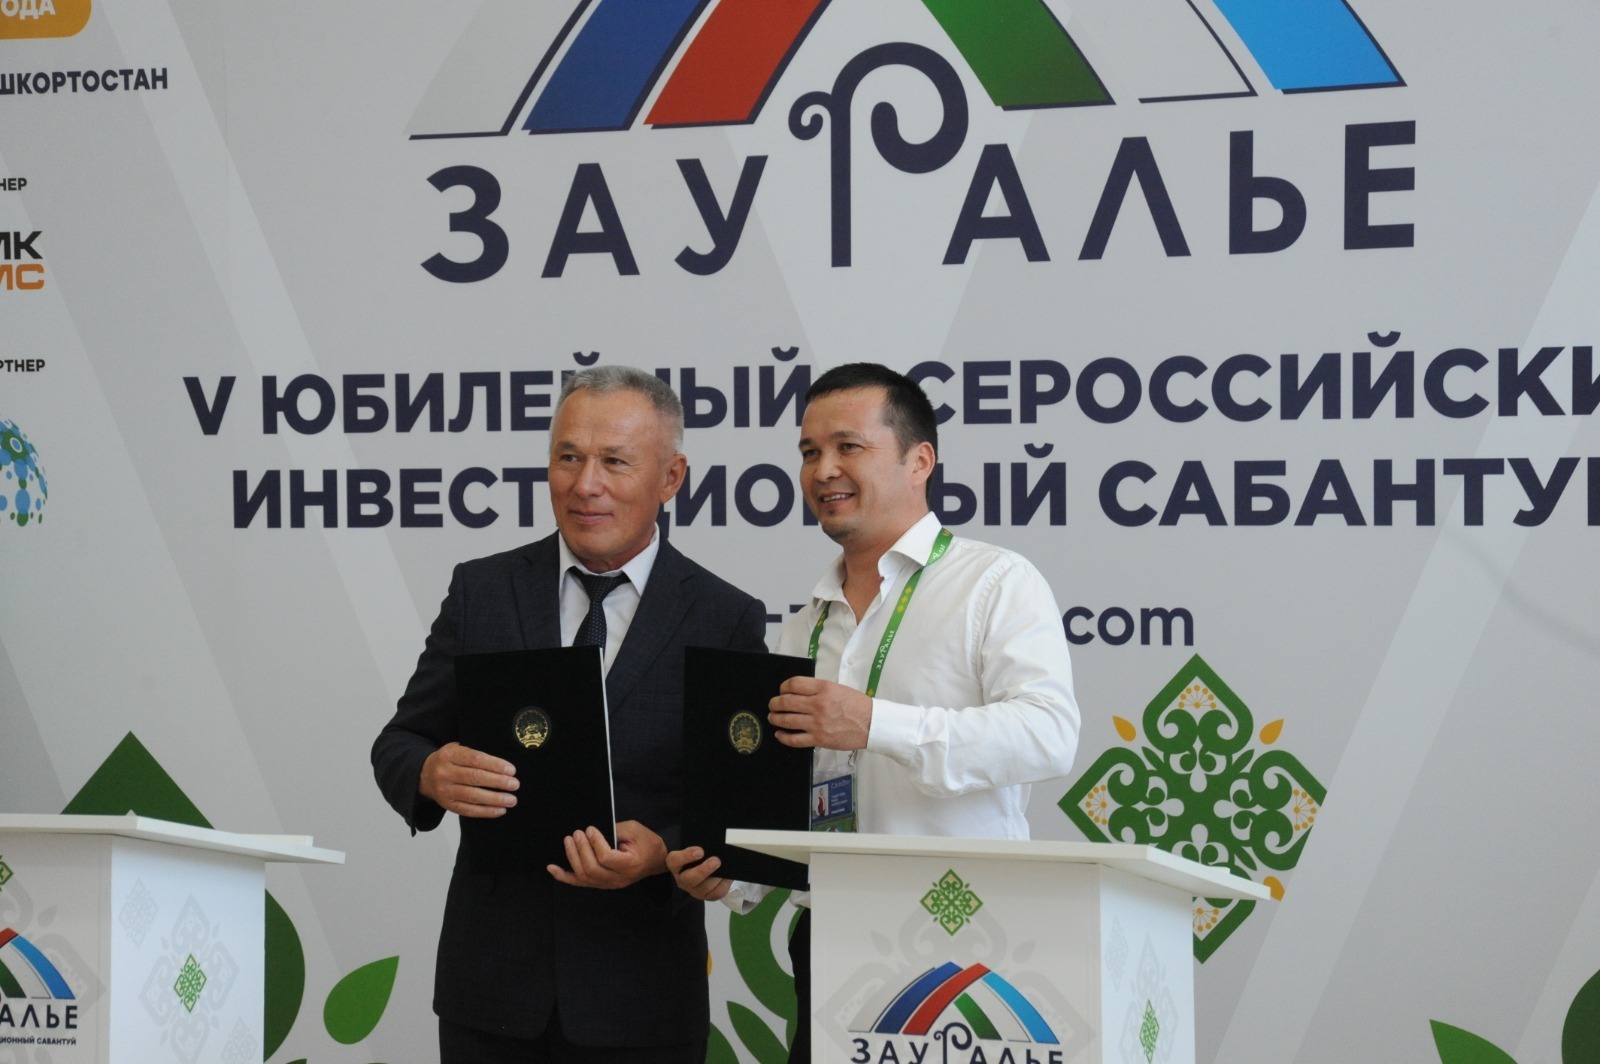 В Башкирии началась подготовка к проведению VI Всероссийского инвестиционного форума "Зауралье"